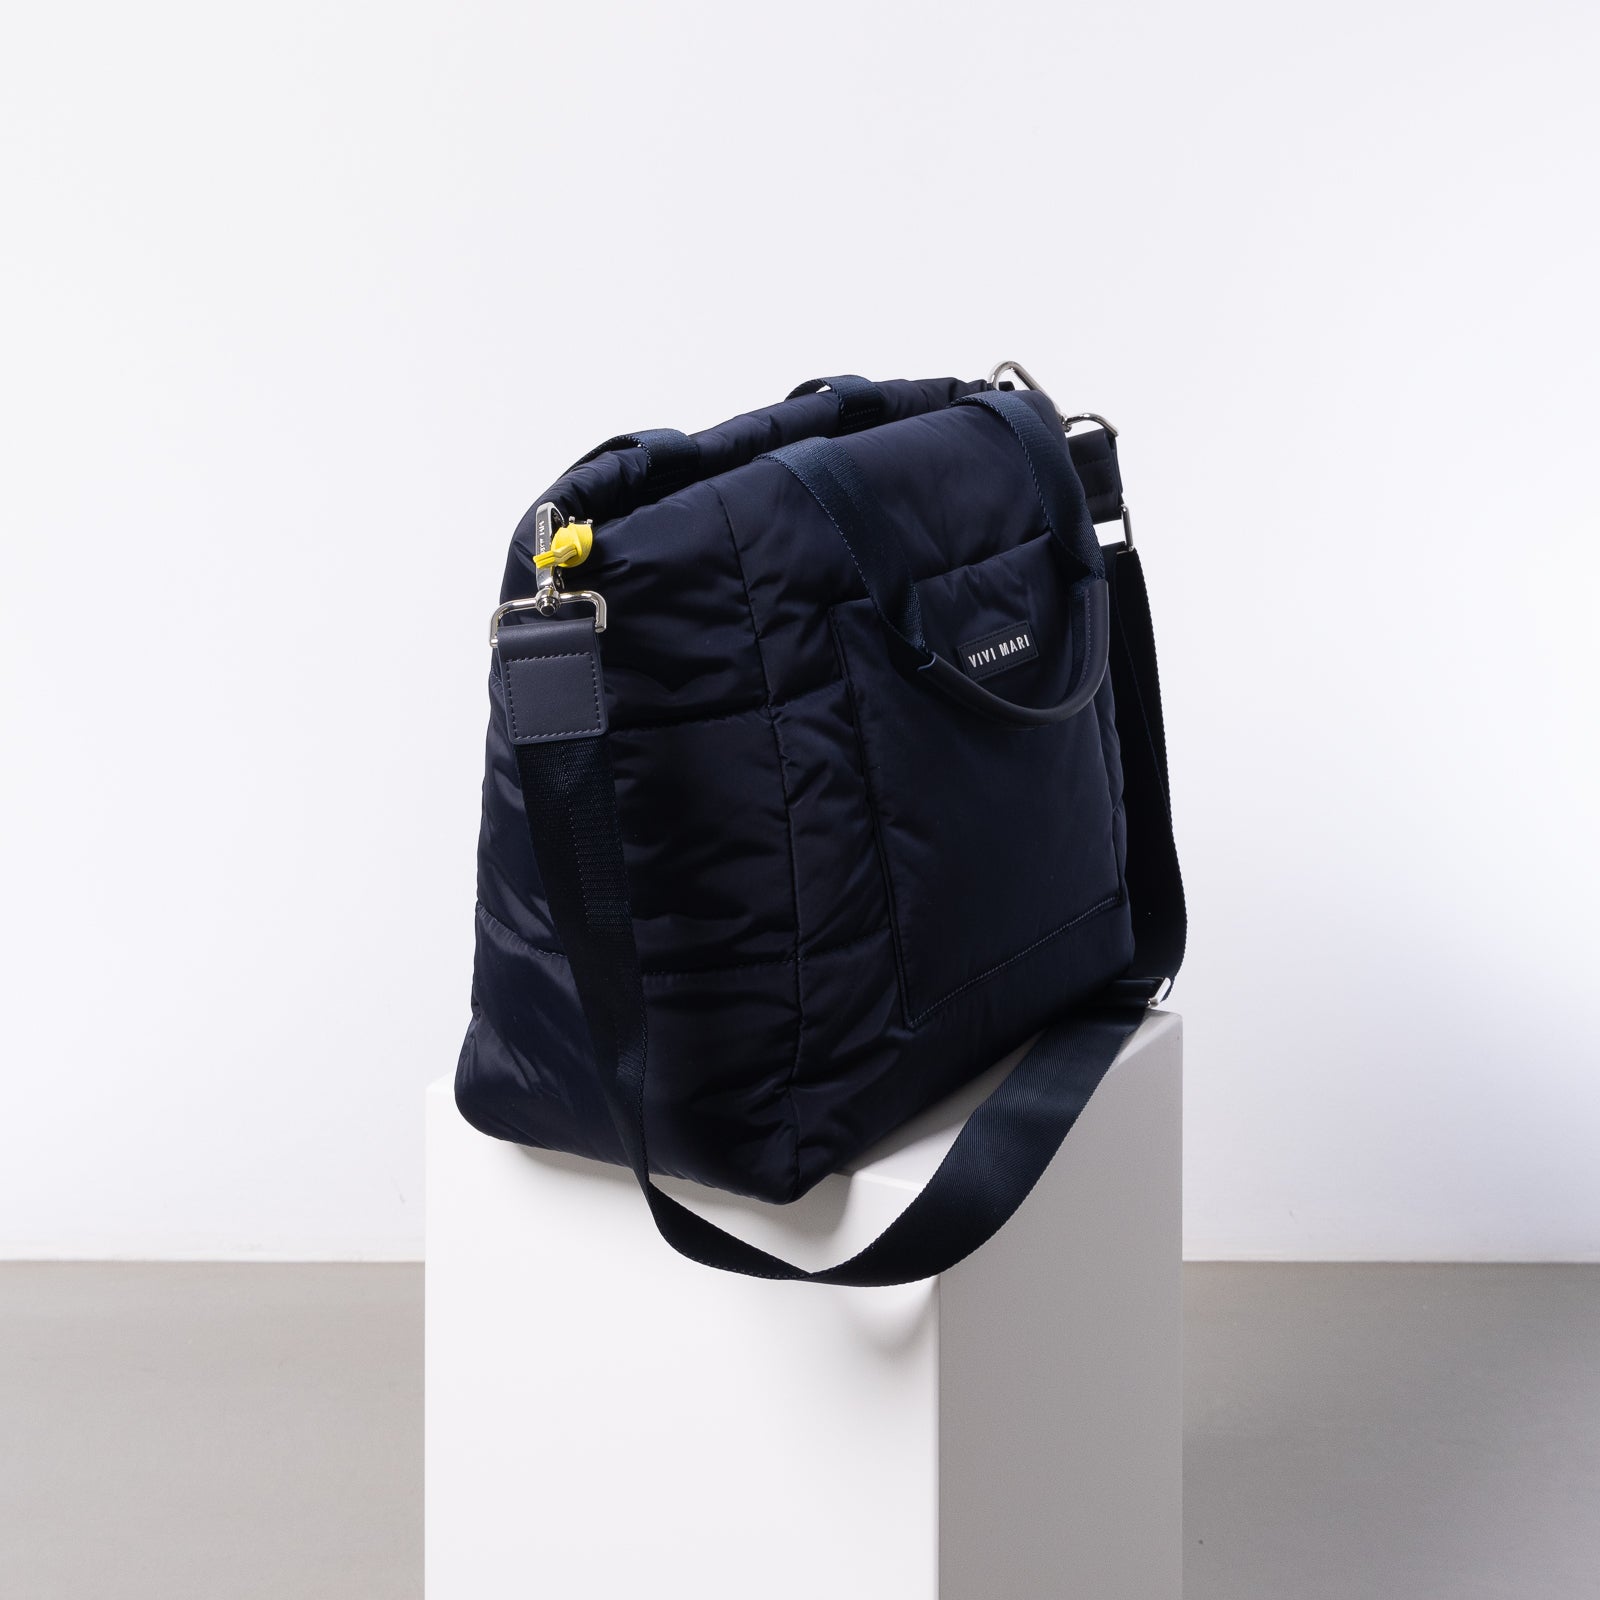 padded tote bag medium + strap basic woven slim - navy - VIVI MARI